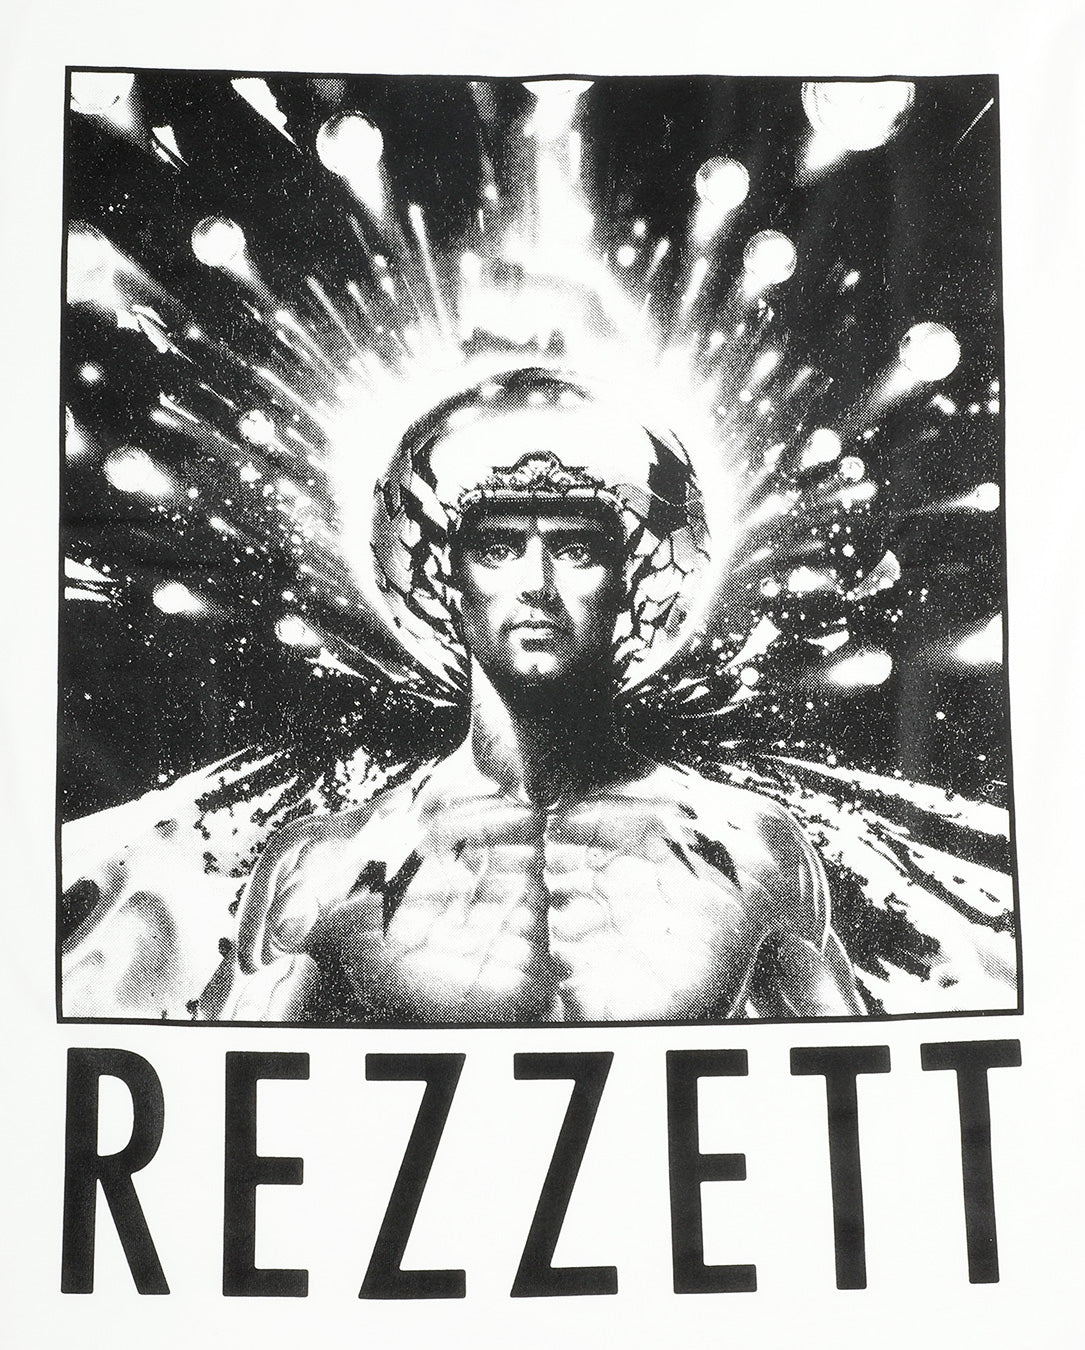 TTT Rezzett Boshly T-shirt